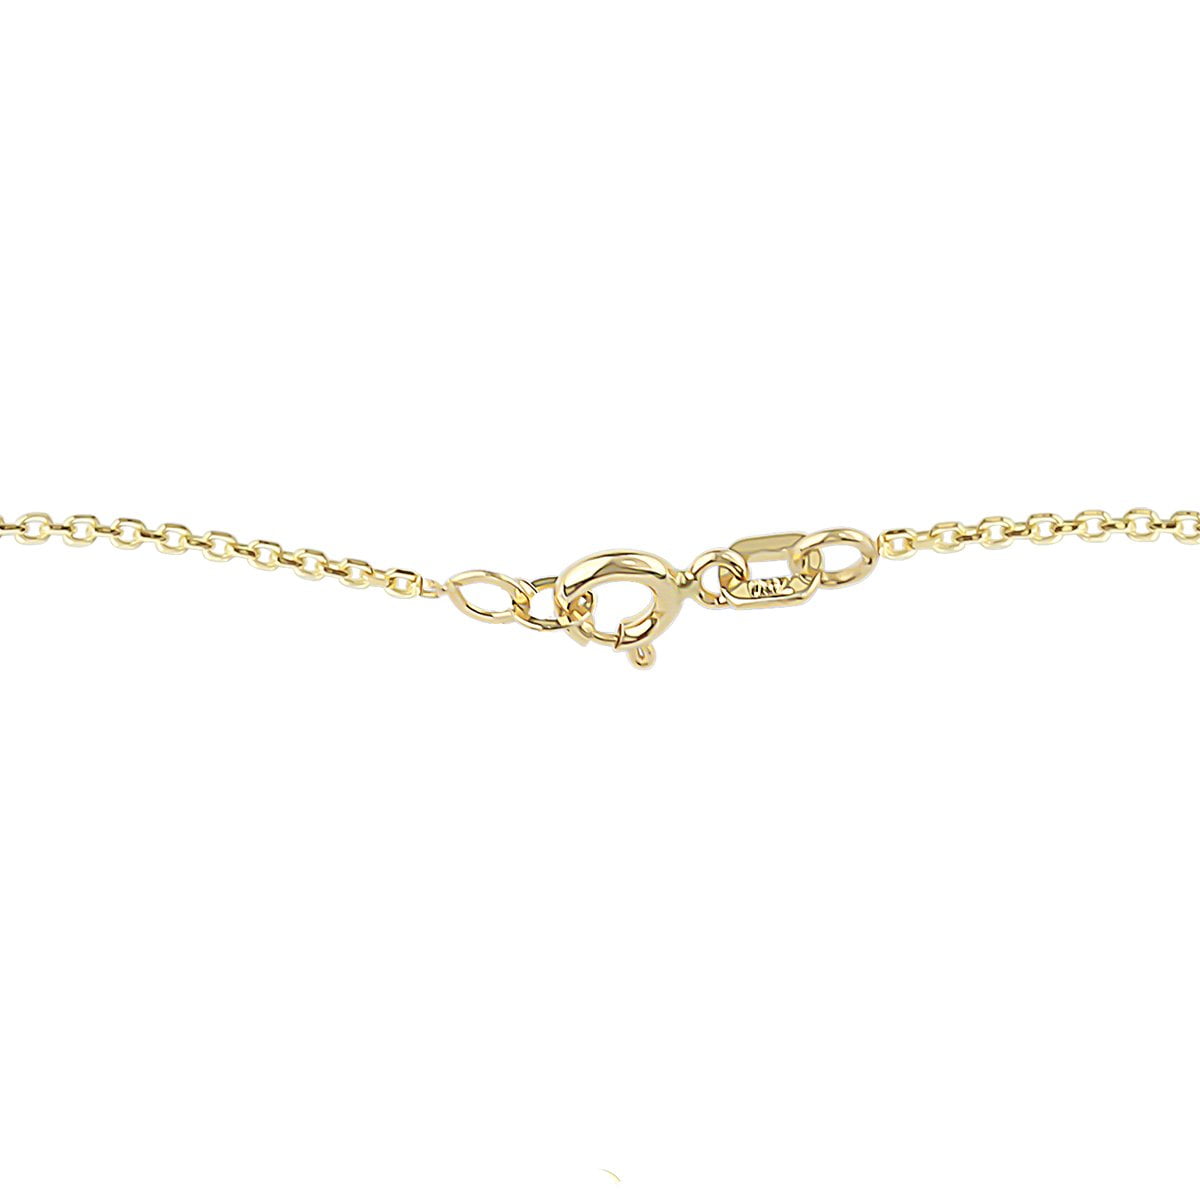 Unique Gia 18ct Gold Pendant Necklace Close Up View